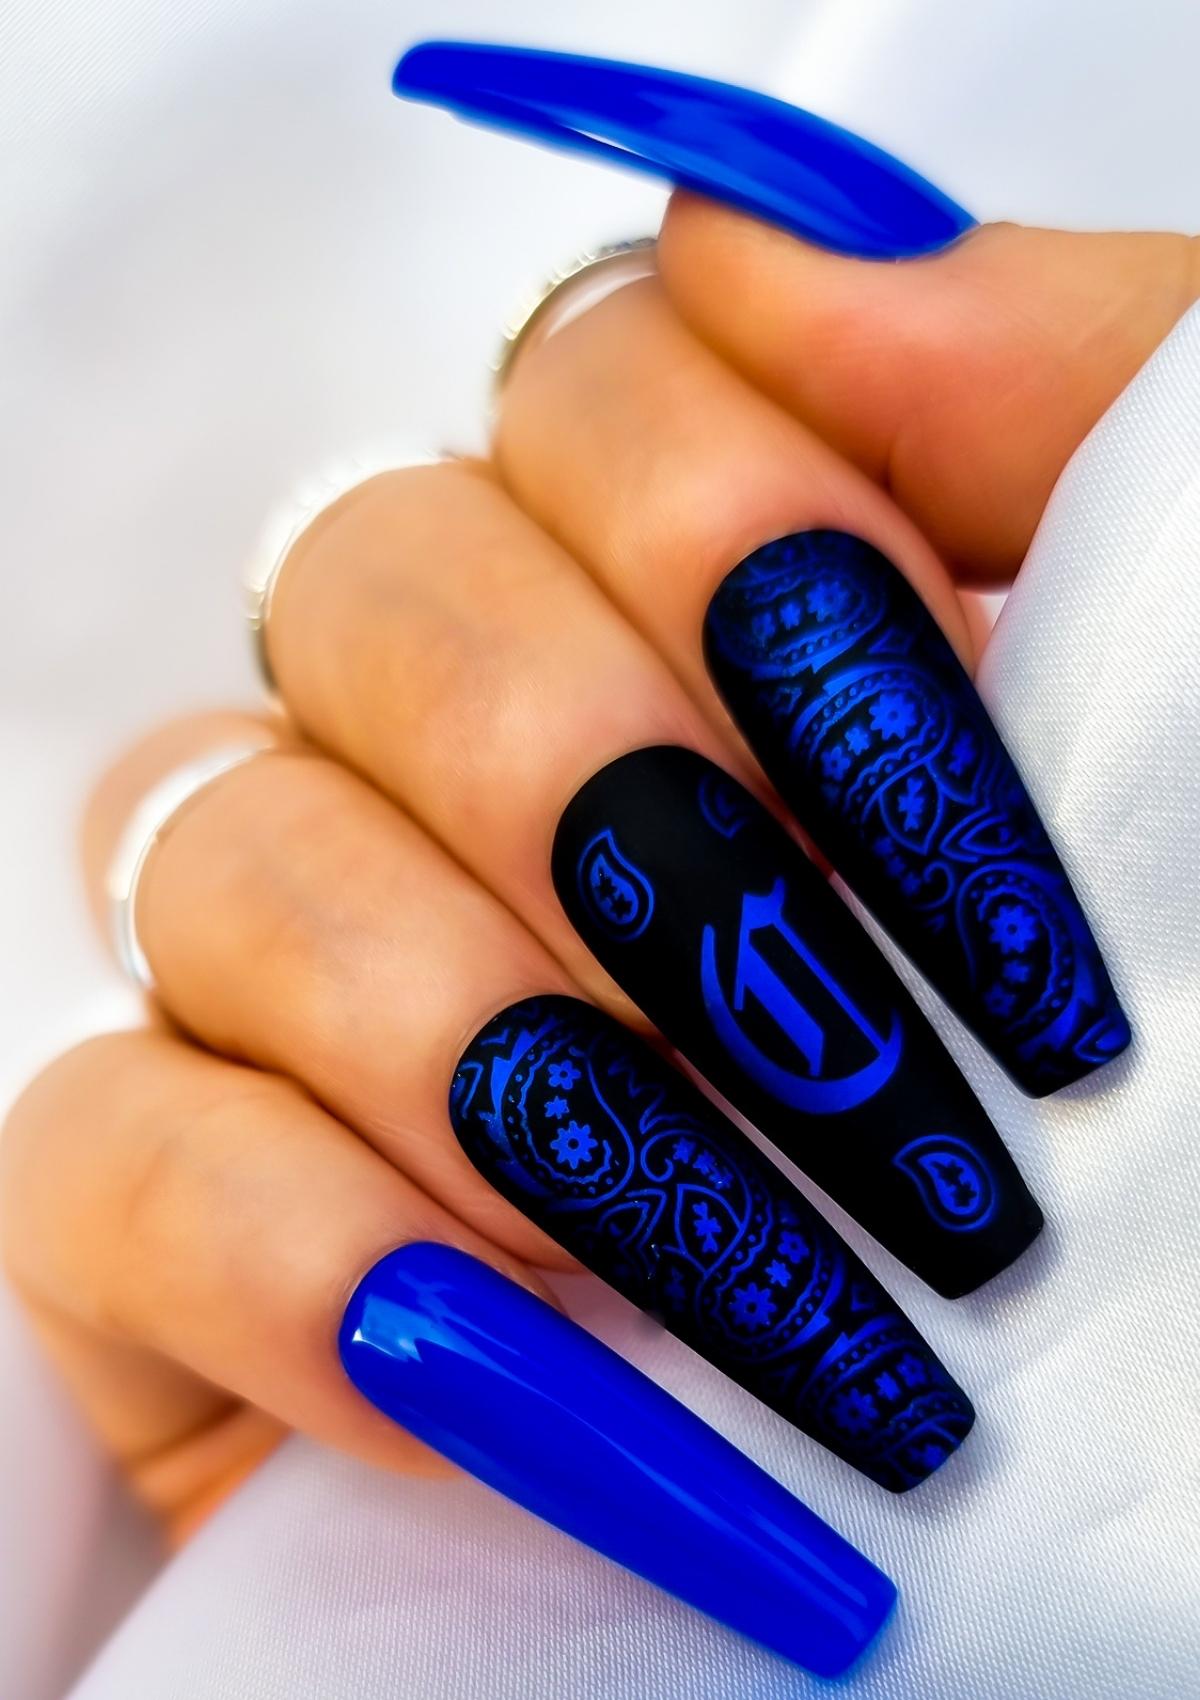 Crip nails with black and blue paisley bandana nail design and Old English C